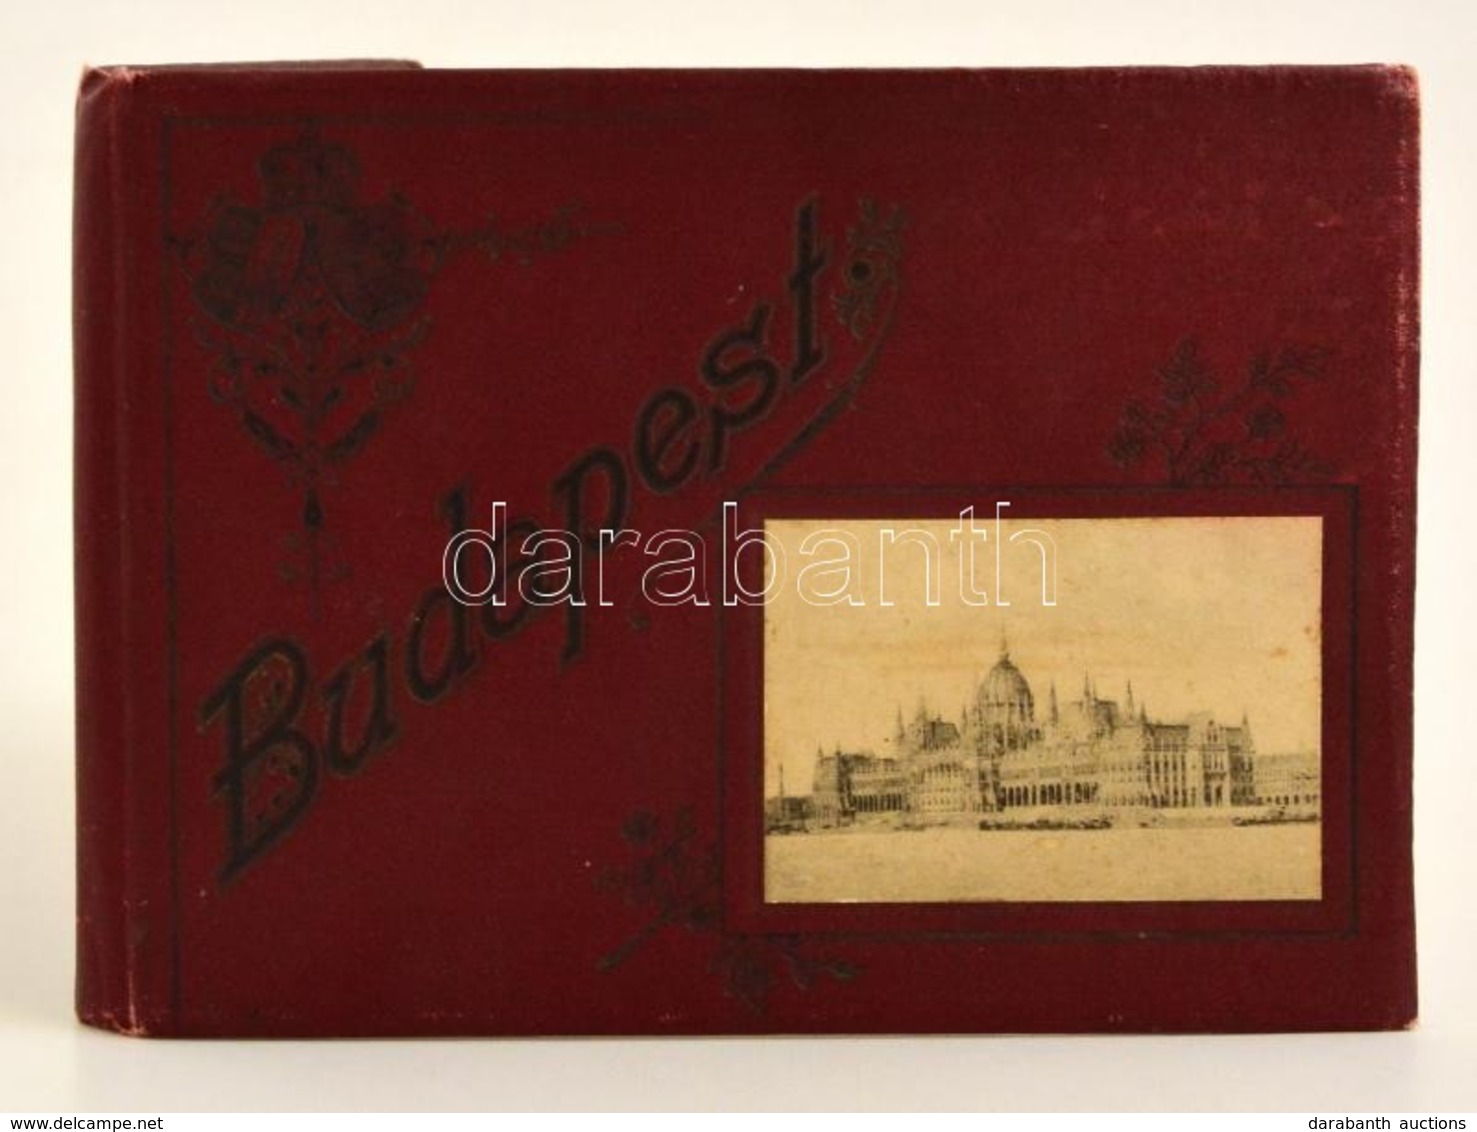 Cca 1900 Budapest, Leporelló Album Számos Látképpel, Divald Károly, Budapest, Kissé Kopott, Díszes Vászonkötésben - Ohne Zuordnung